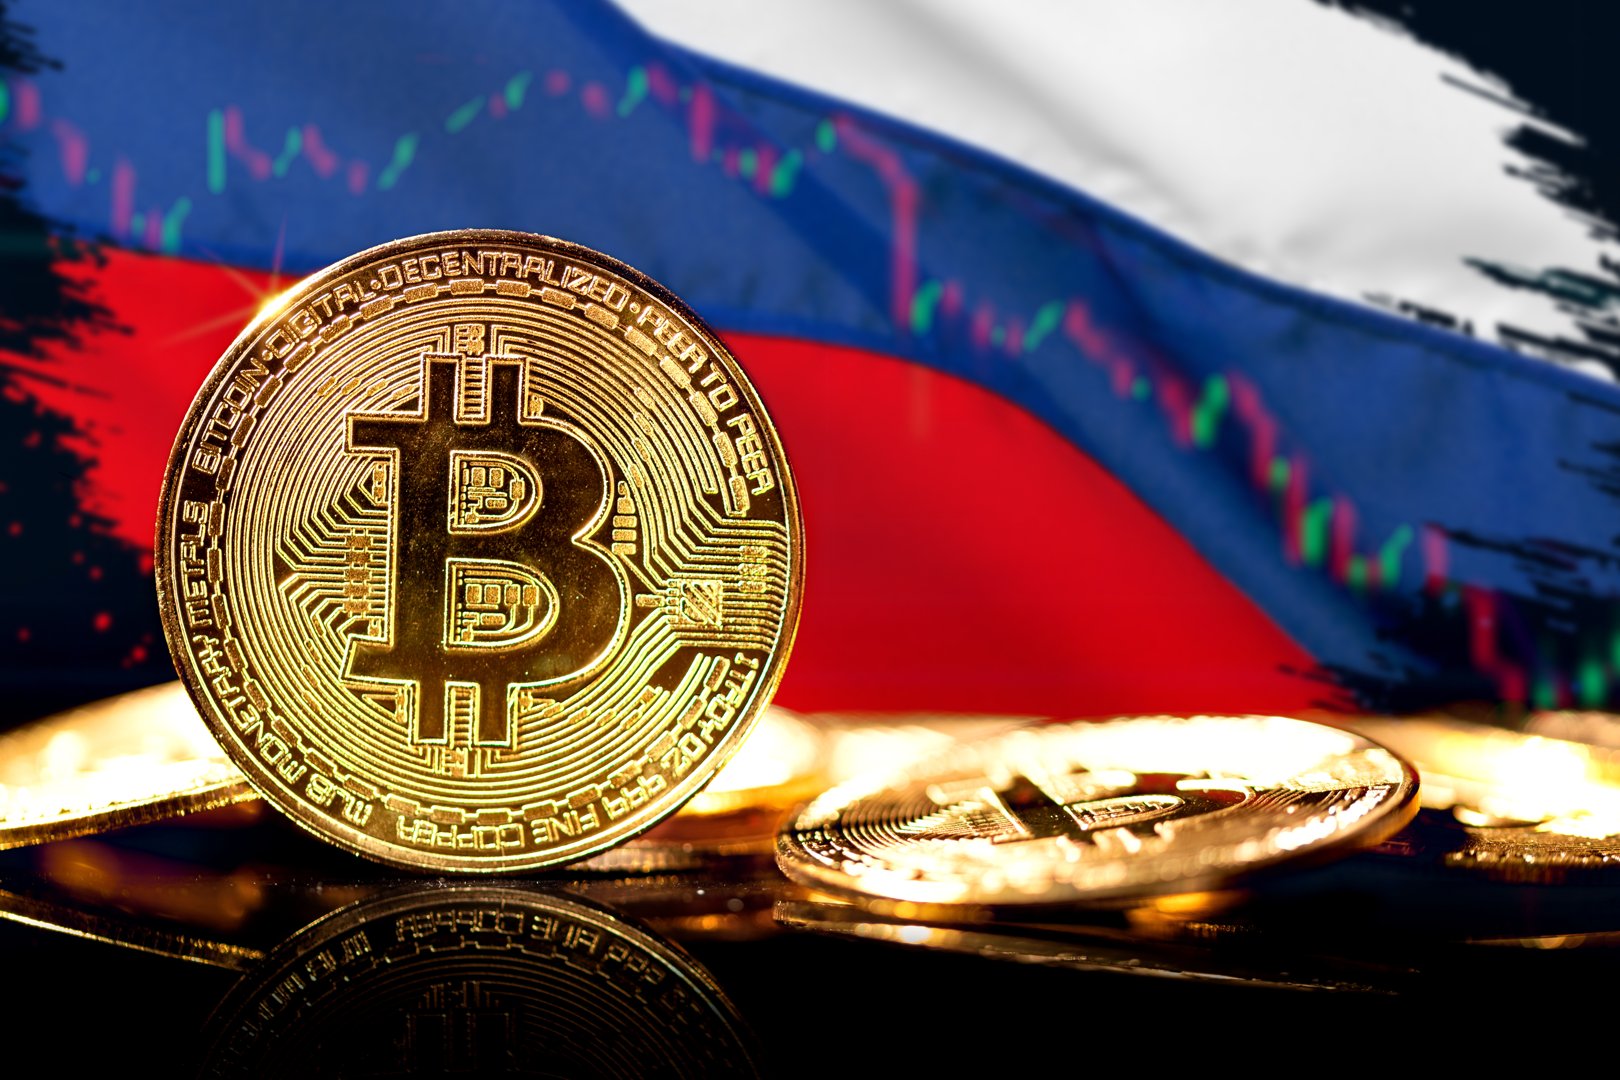 Rappresentazioni artistiche di un token Bitcoin, sullo sfondo della bandiera russa e di un grafico a linee.